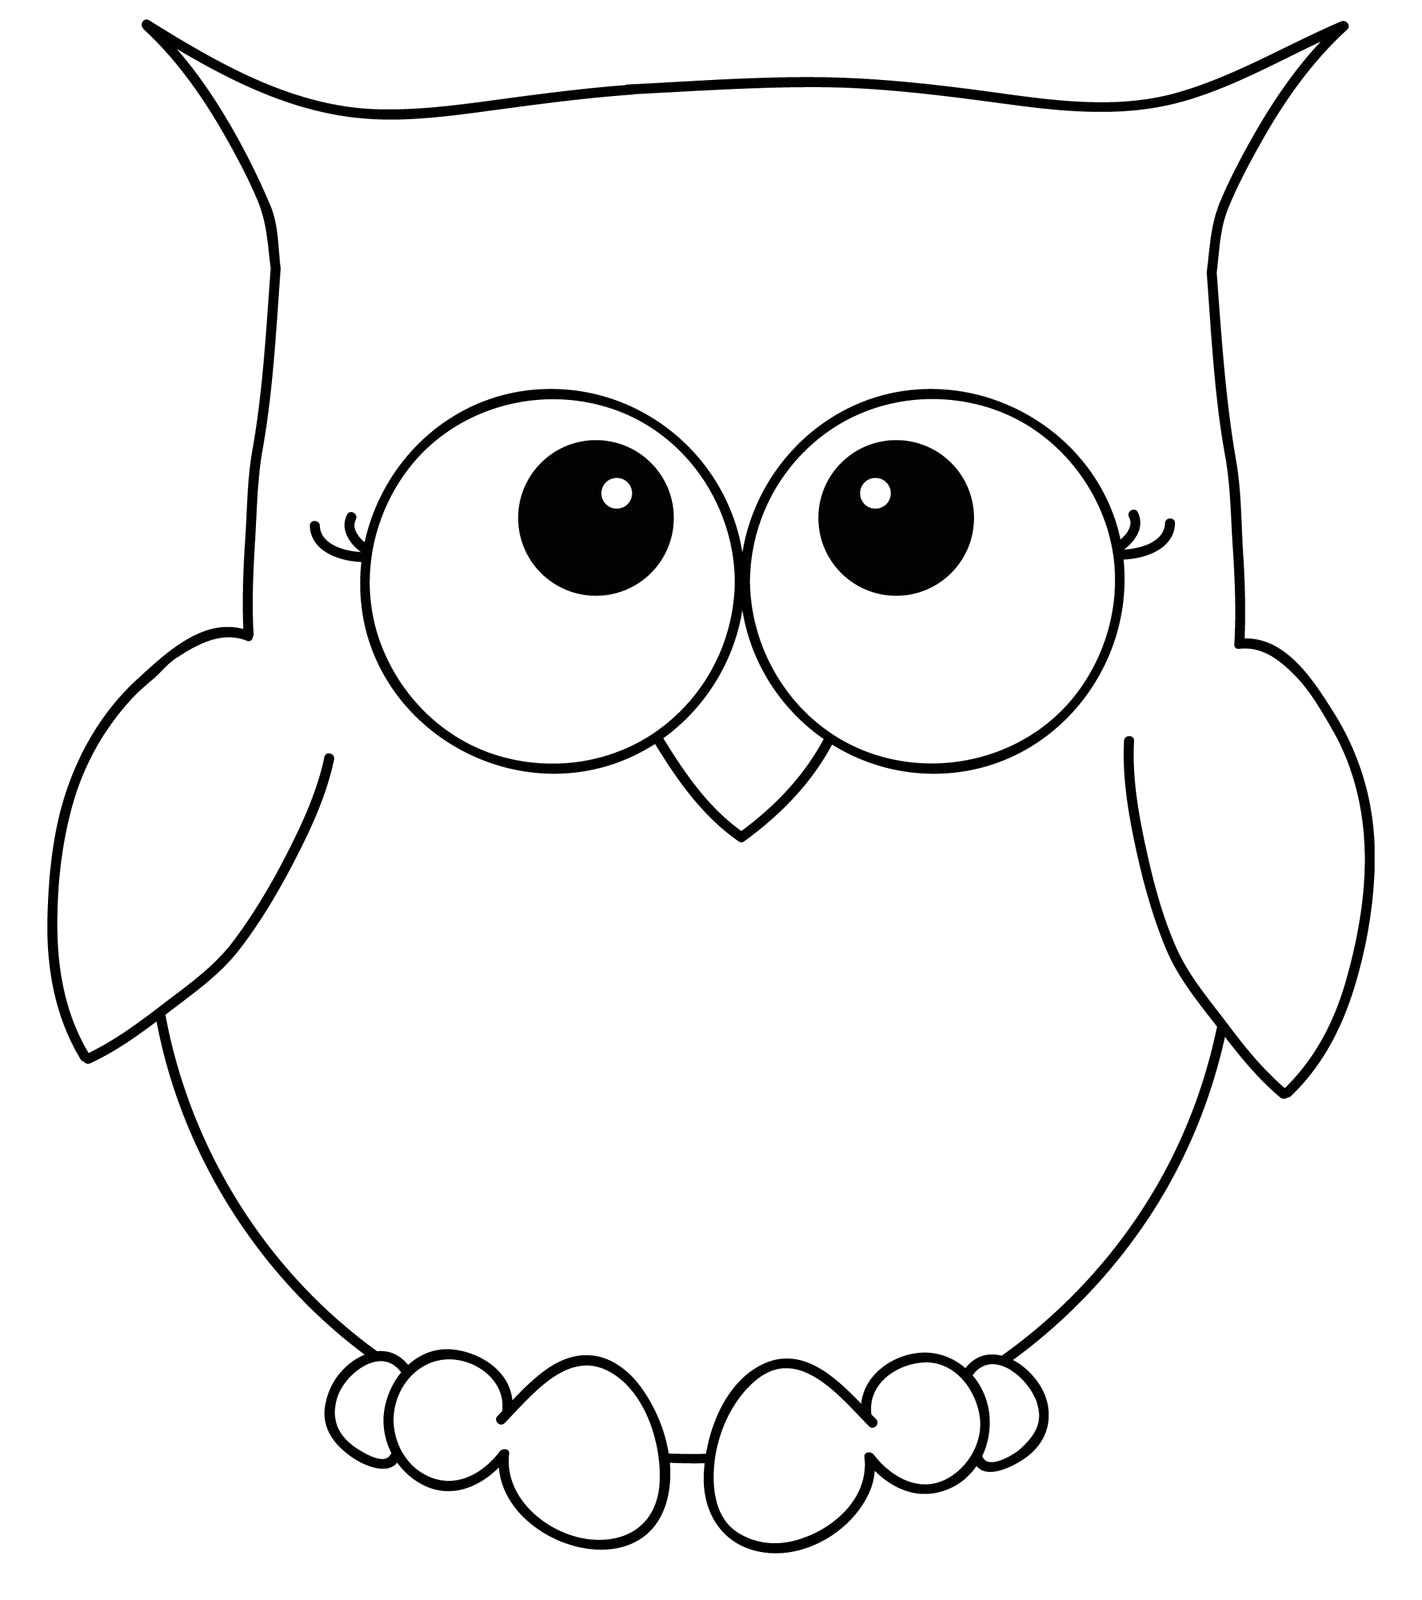 printable-owl-outline